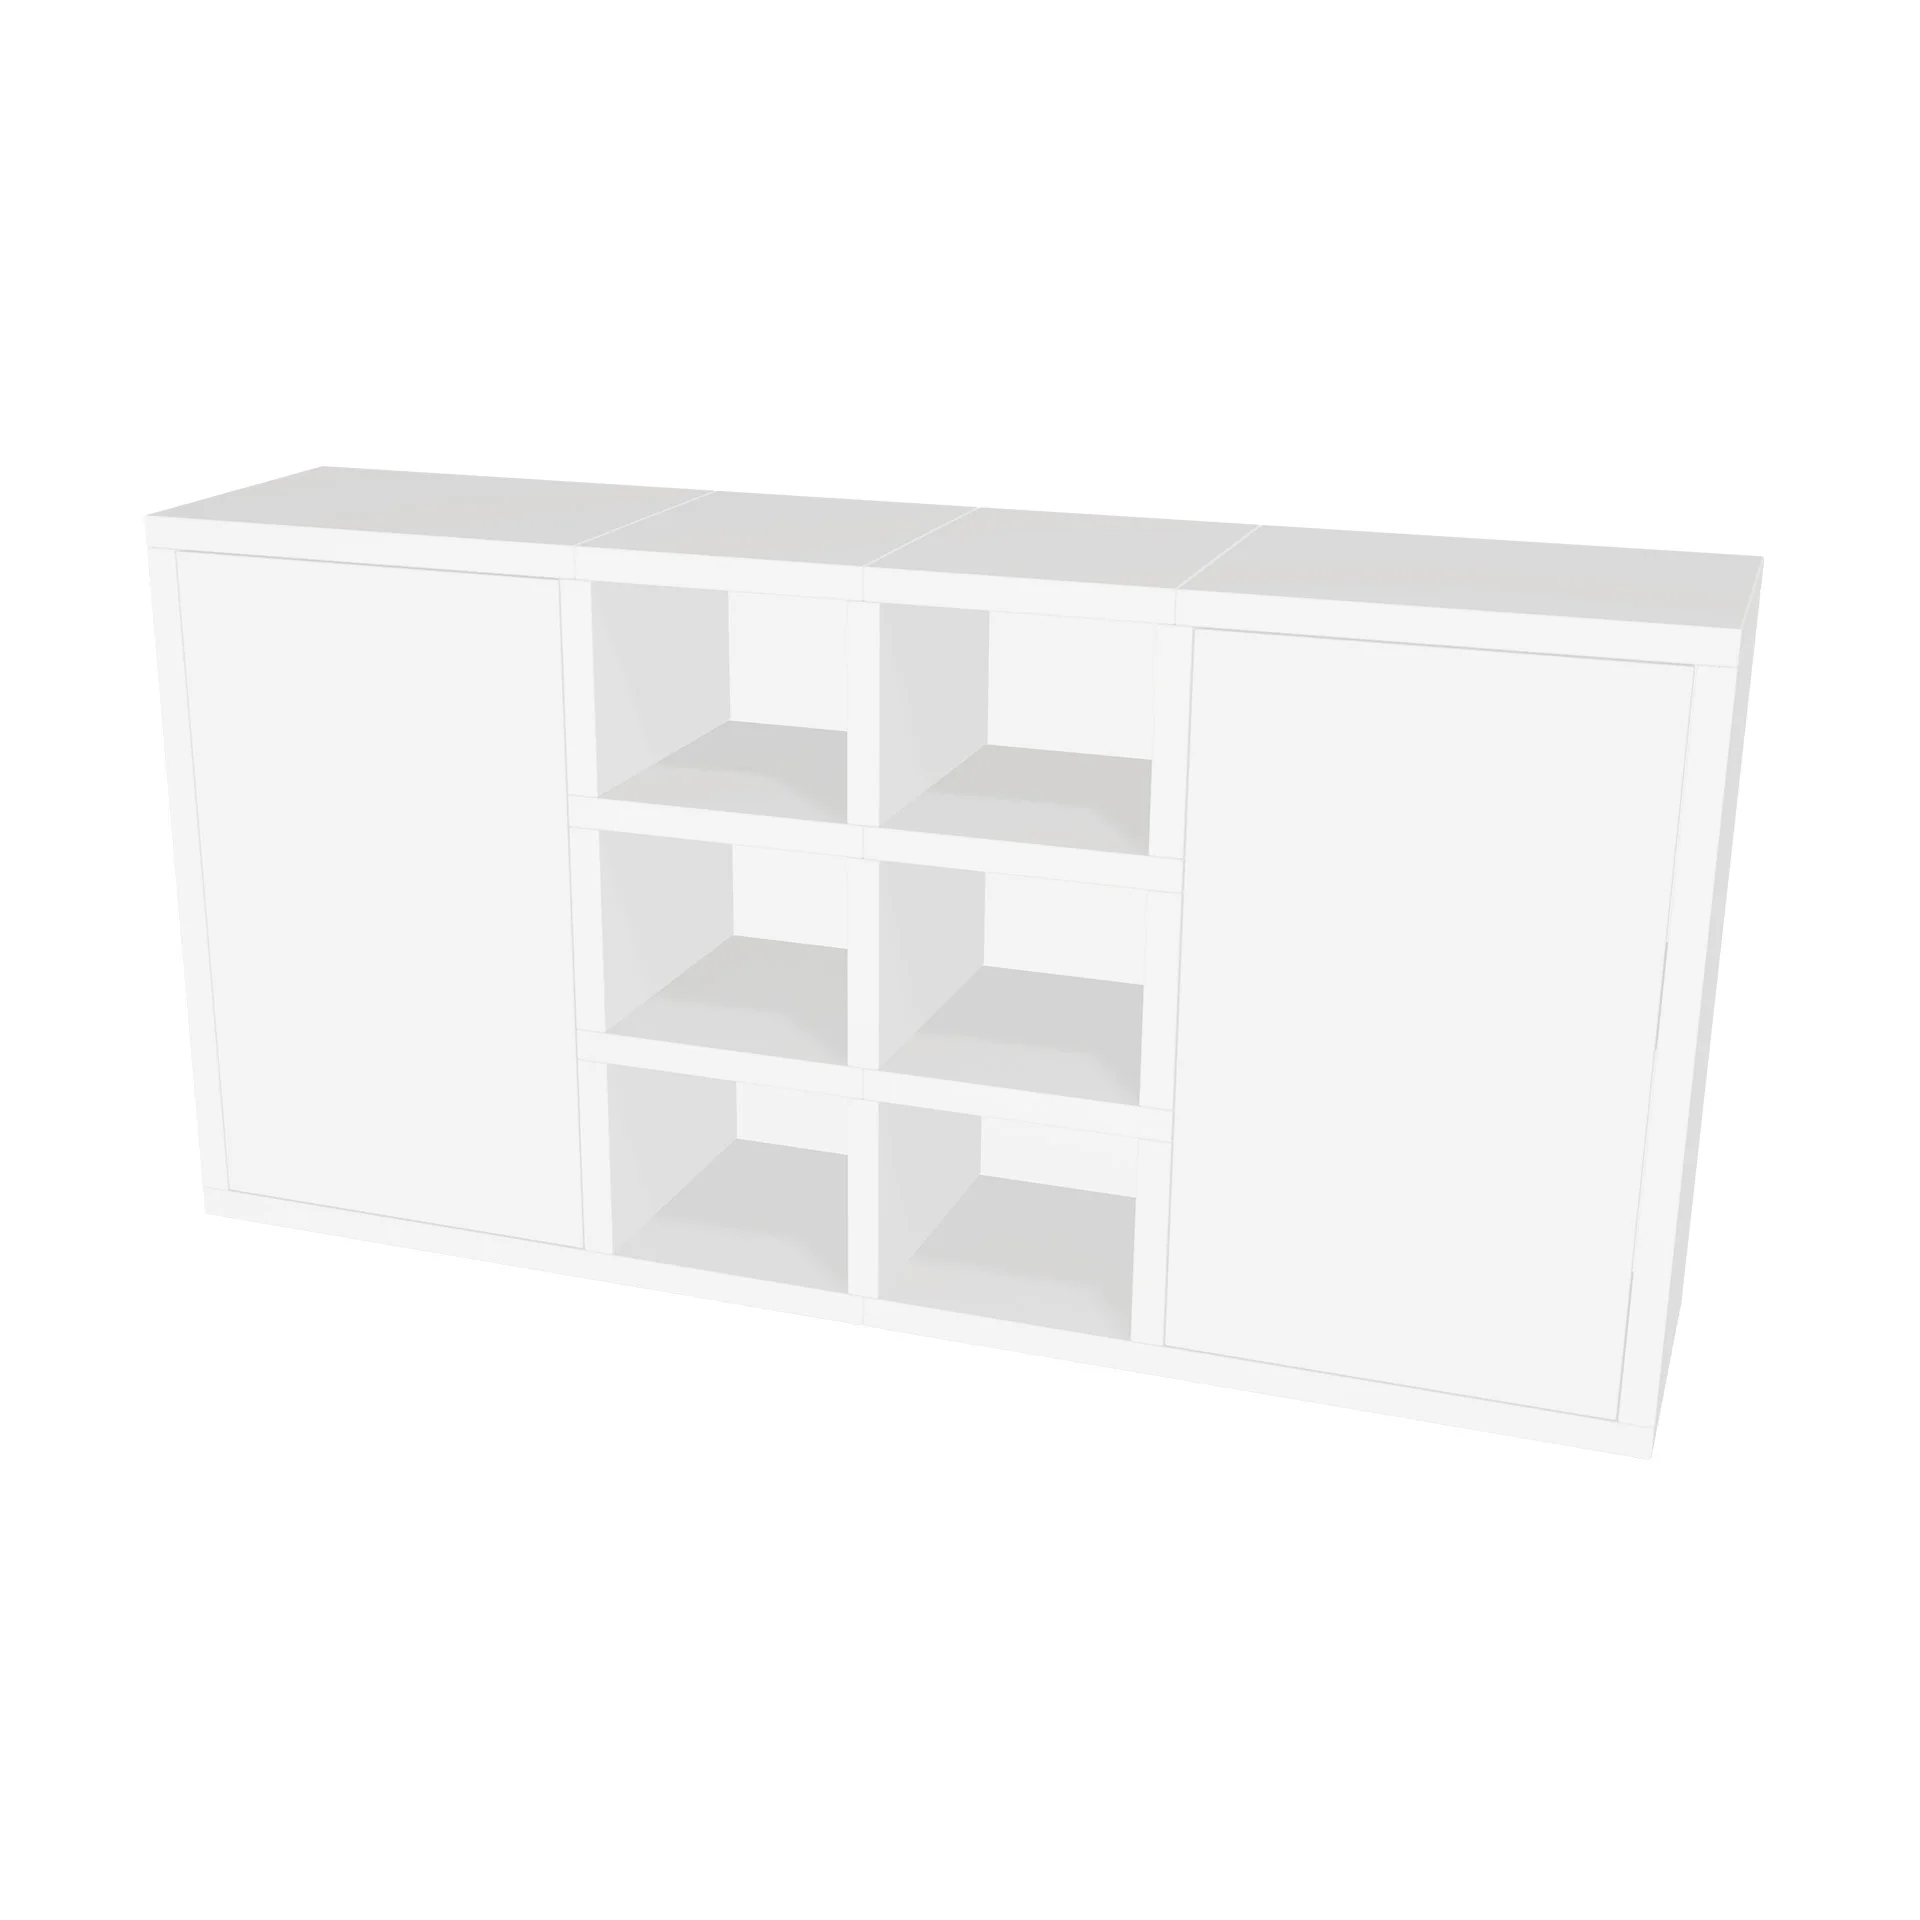 TSFC019 en panel de muebles blanco